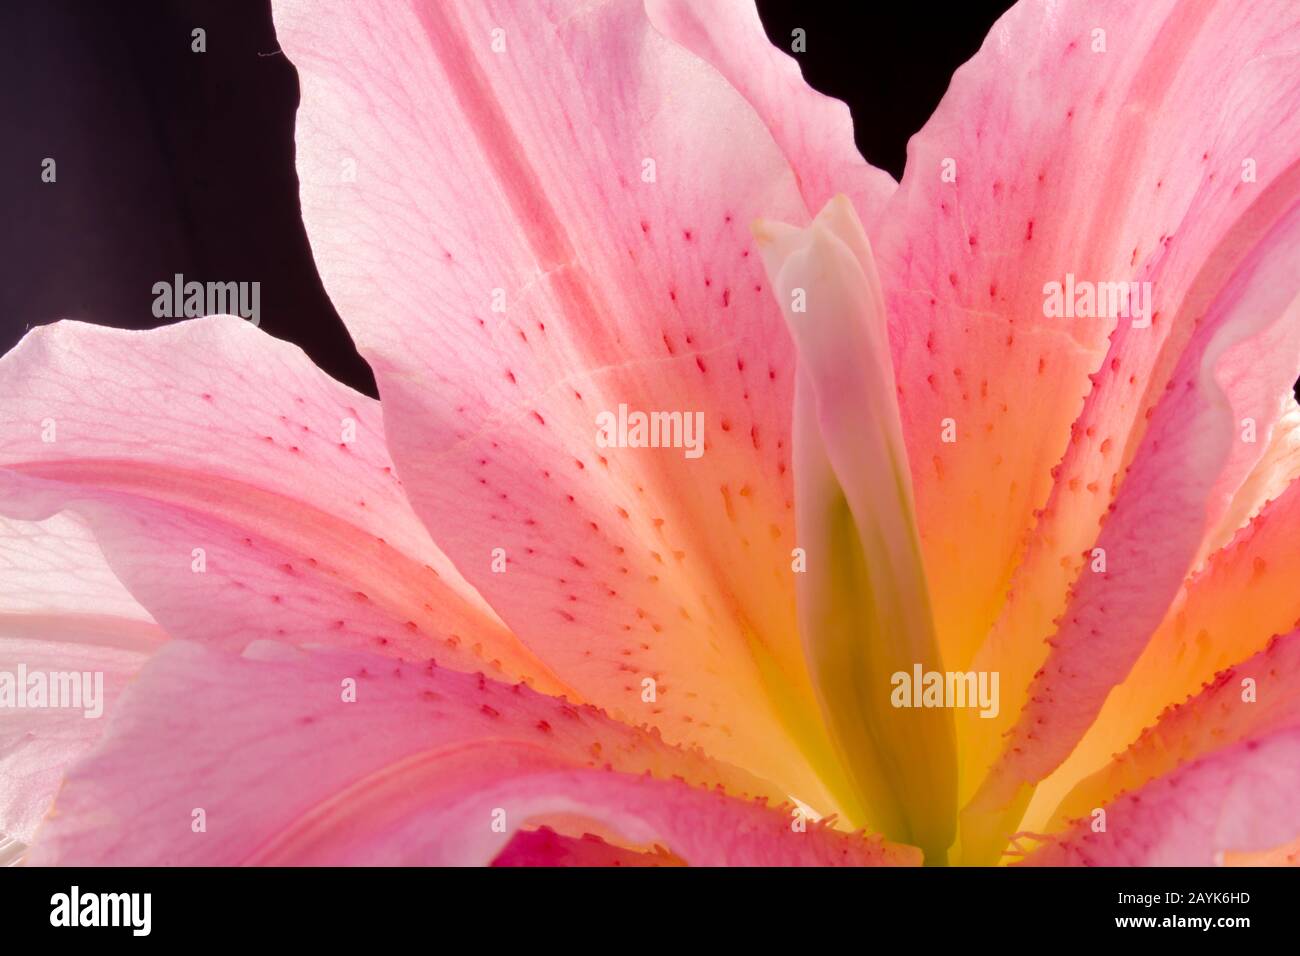 Beautiful pink lily closeup Stock Photo